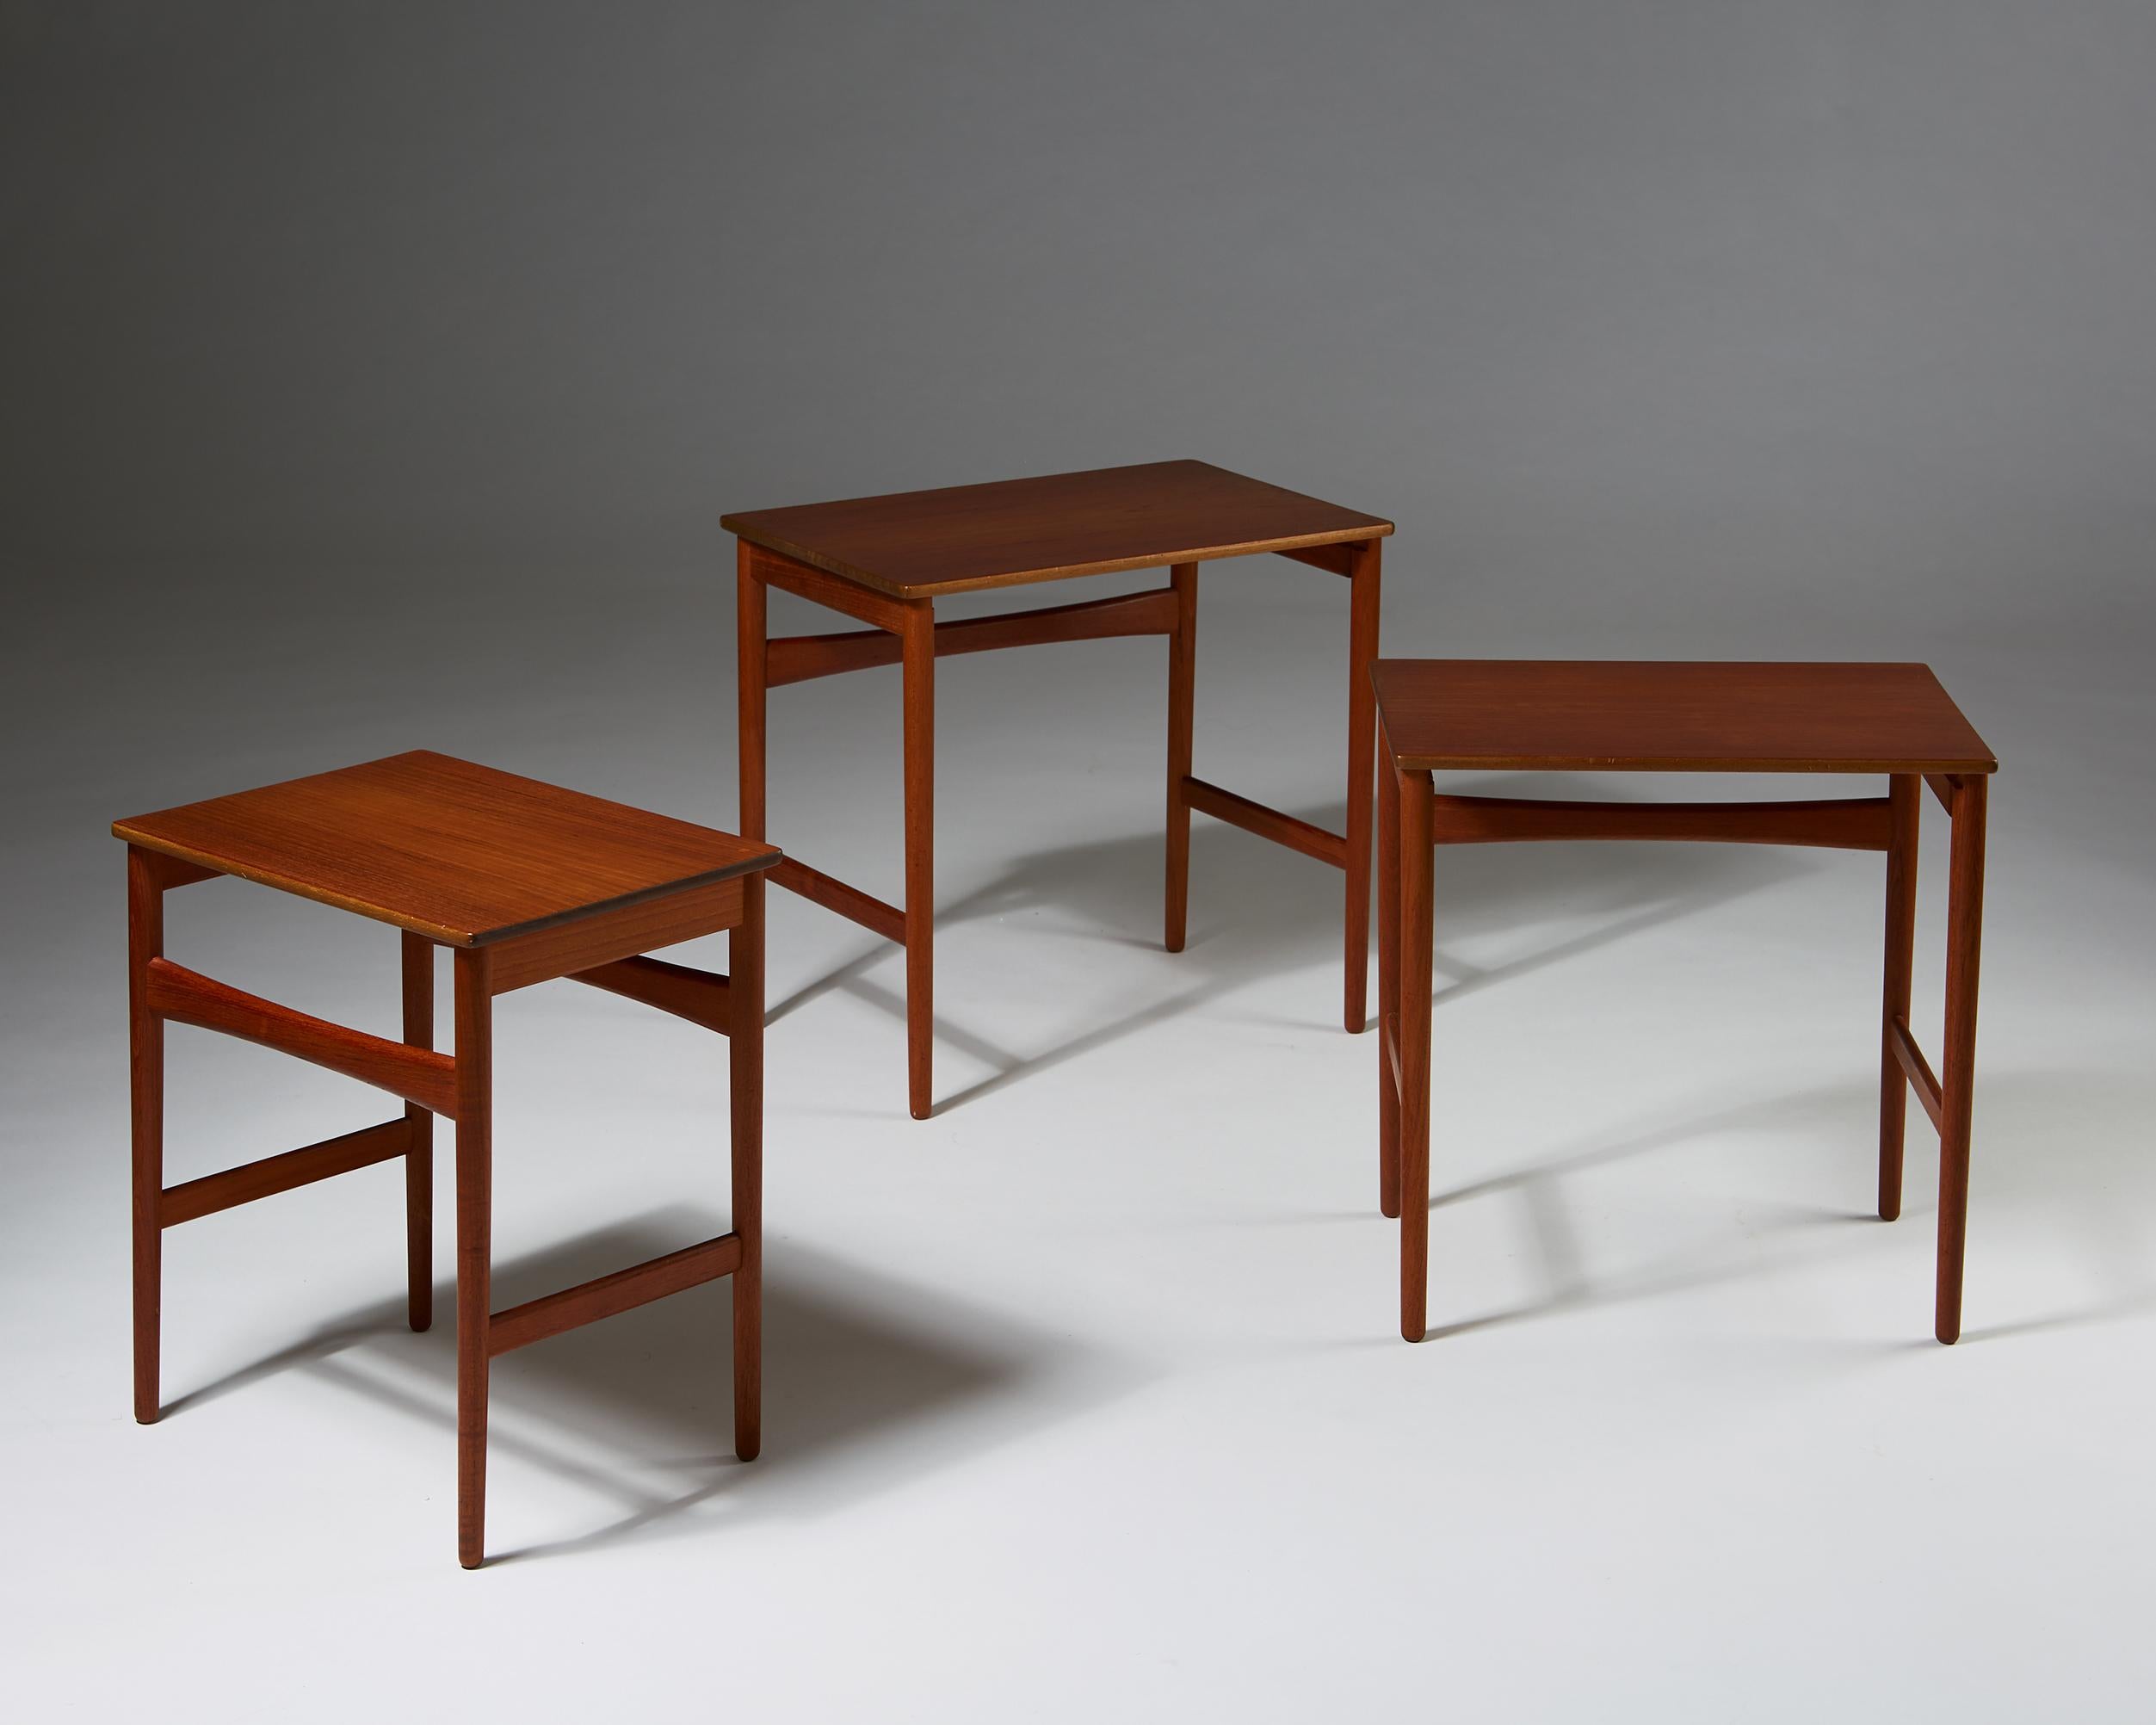 Mid-20th Century Nest of Tables Designed by Hans J. Wegner for Andreas Tuck, Denmark, 1950s